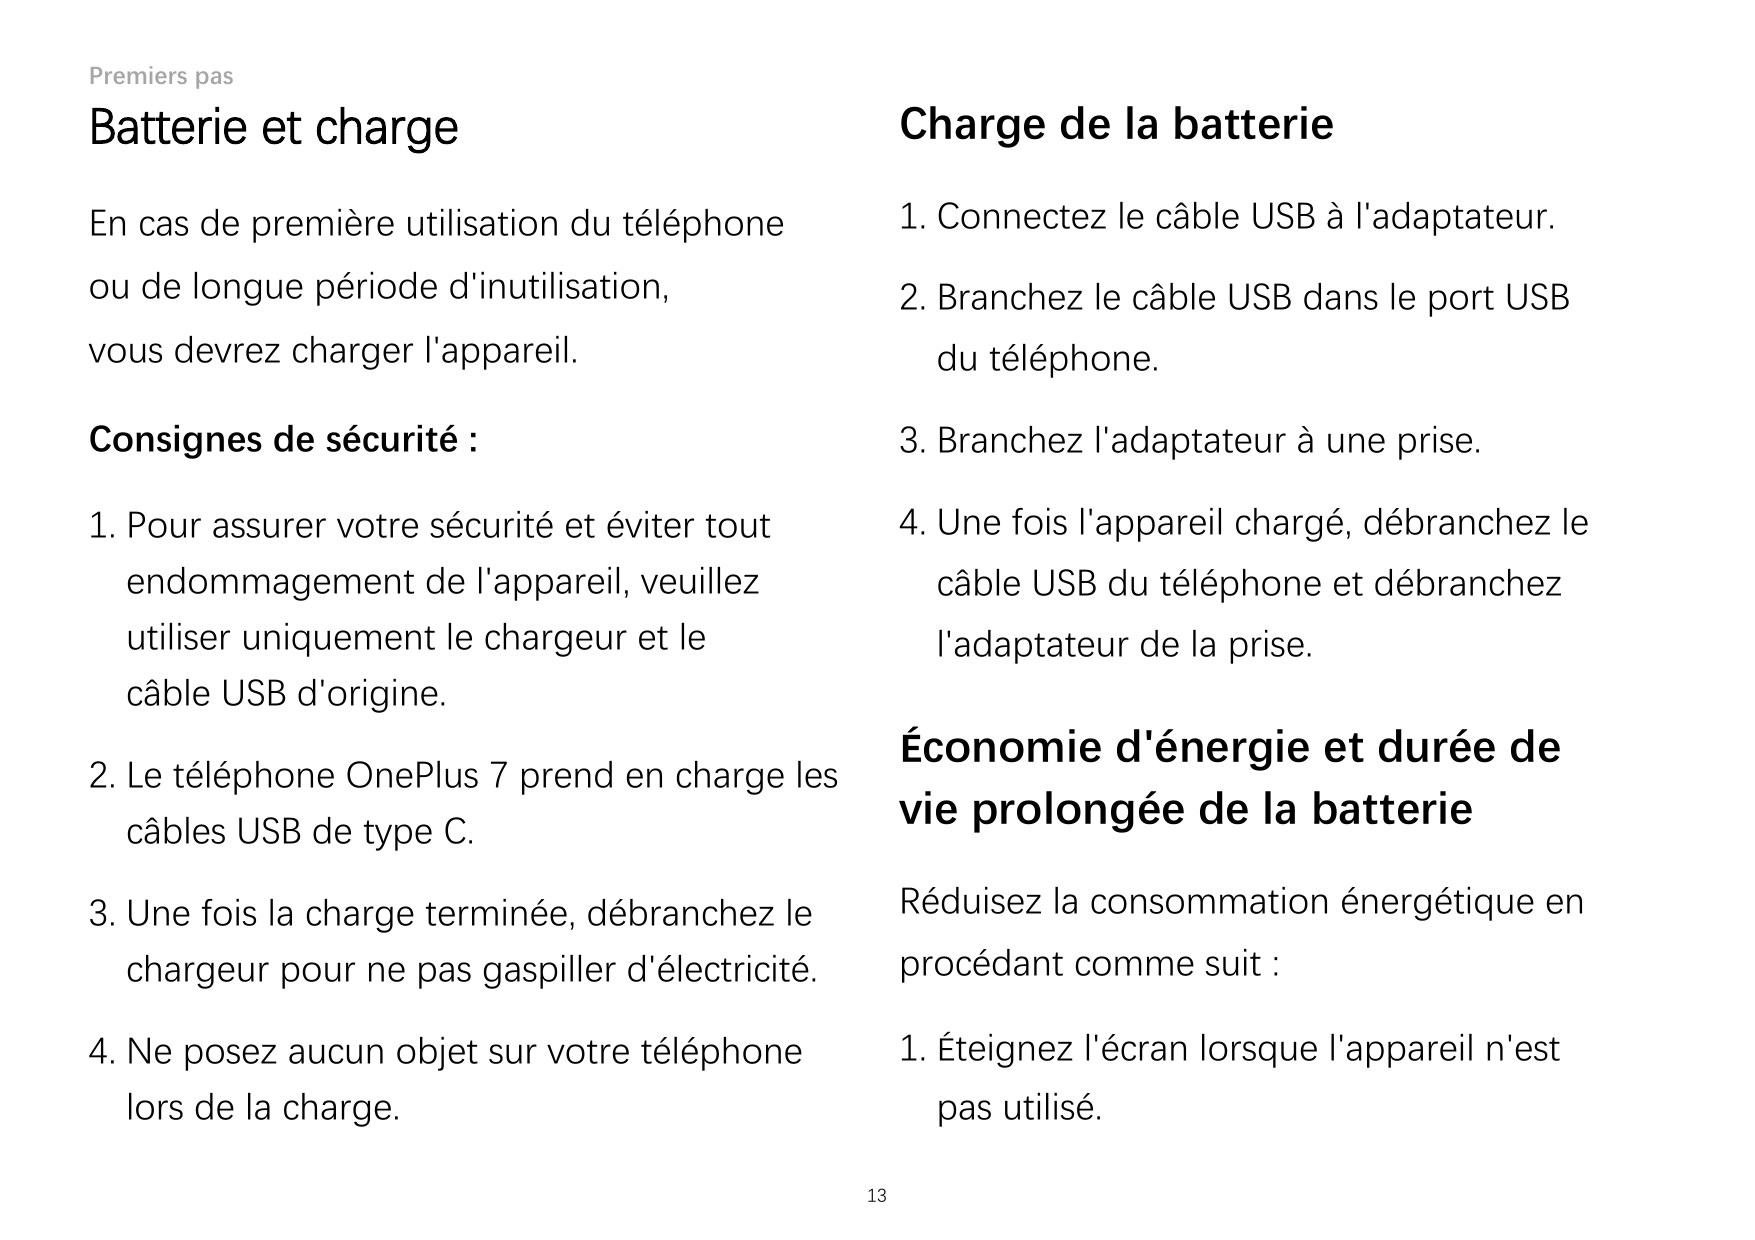 Premiers pasBatterie et chargeCharge de la batterieEn cas de première utilisation du téléphone1. Connectez le câble USB à l'adap